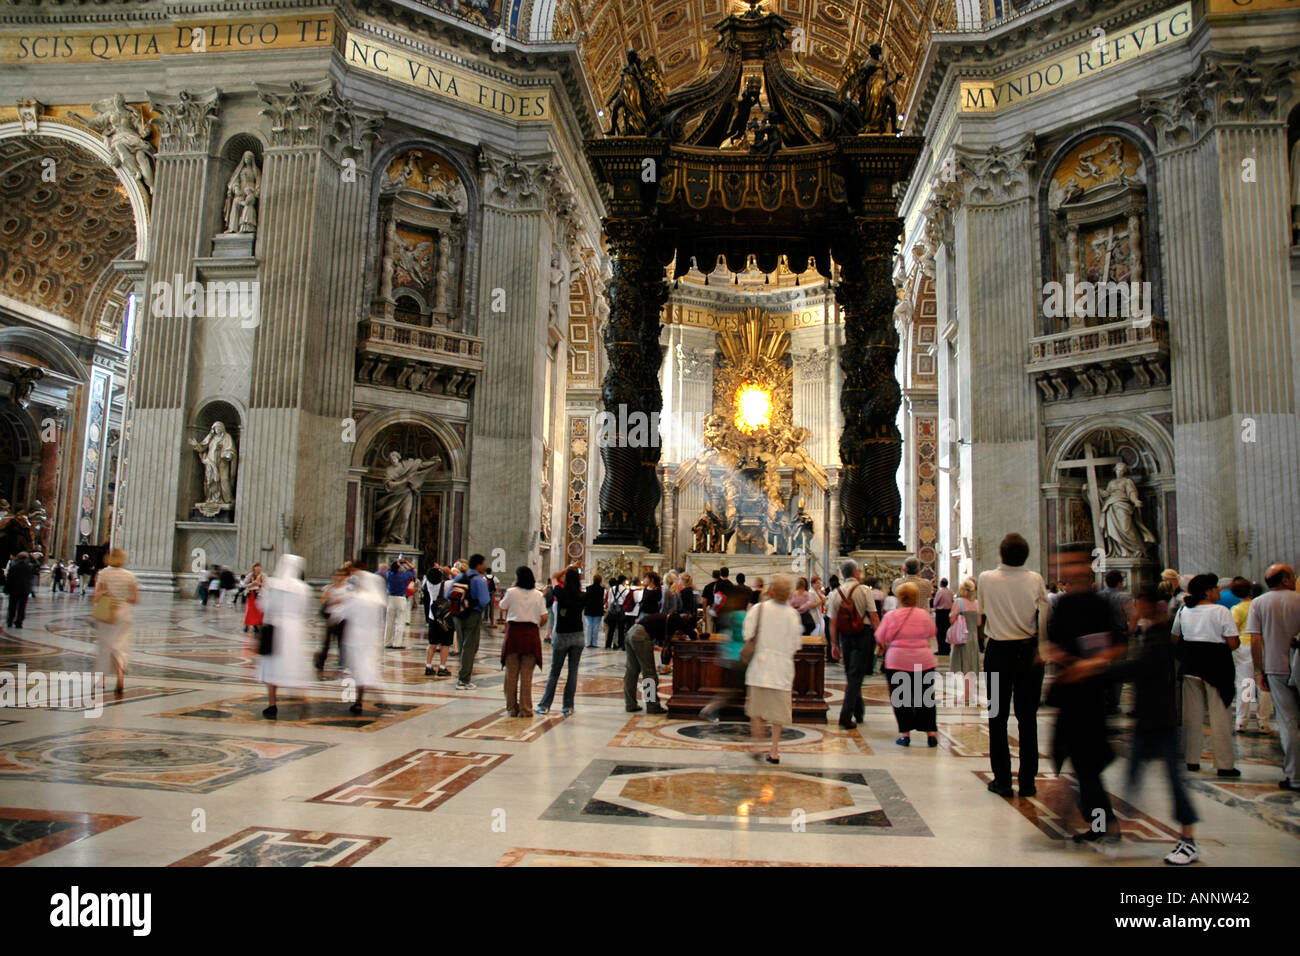 À l'intérieur de Rome, la basilique Saint Pierre la colossale Bernin baldaquin ou auvent au-dessus de l'autel papal domine la longue nef Banque D'Images